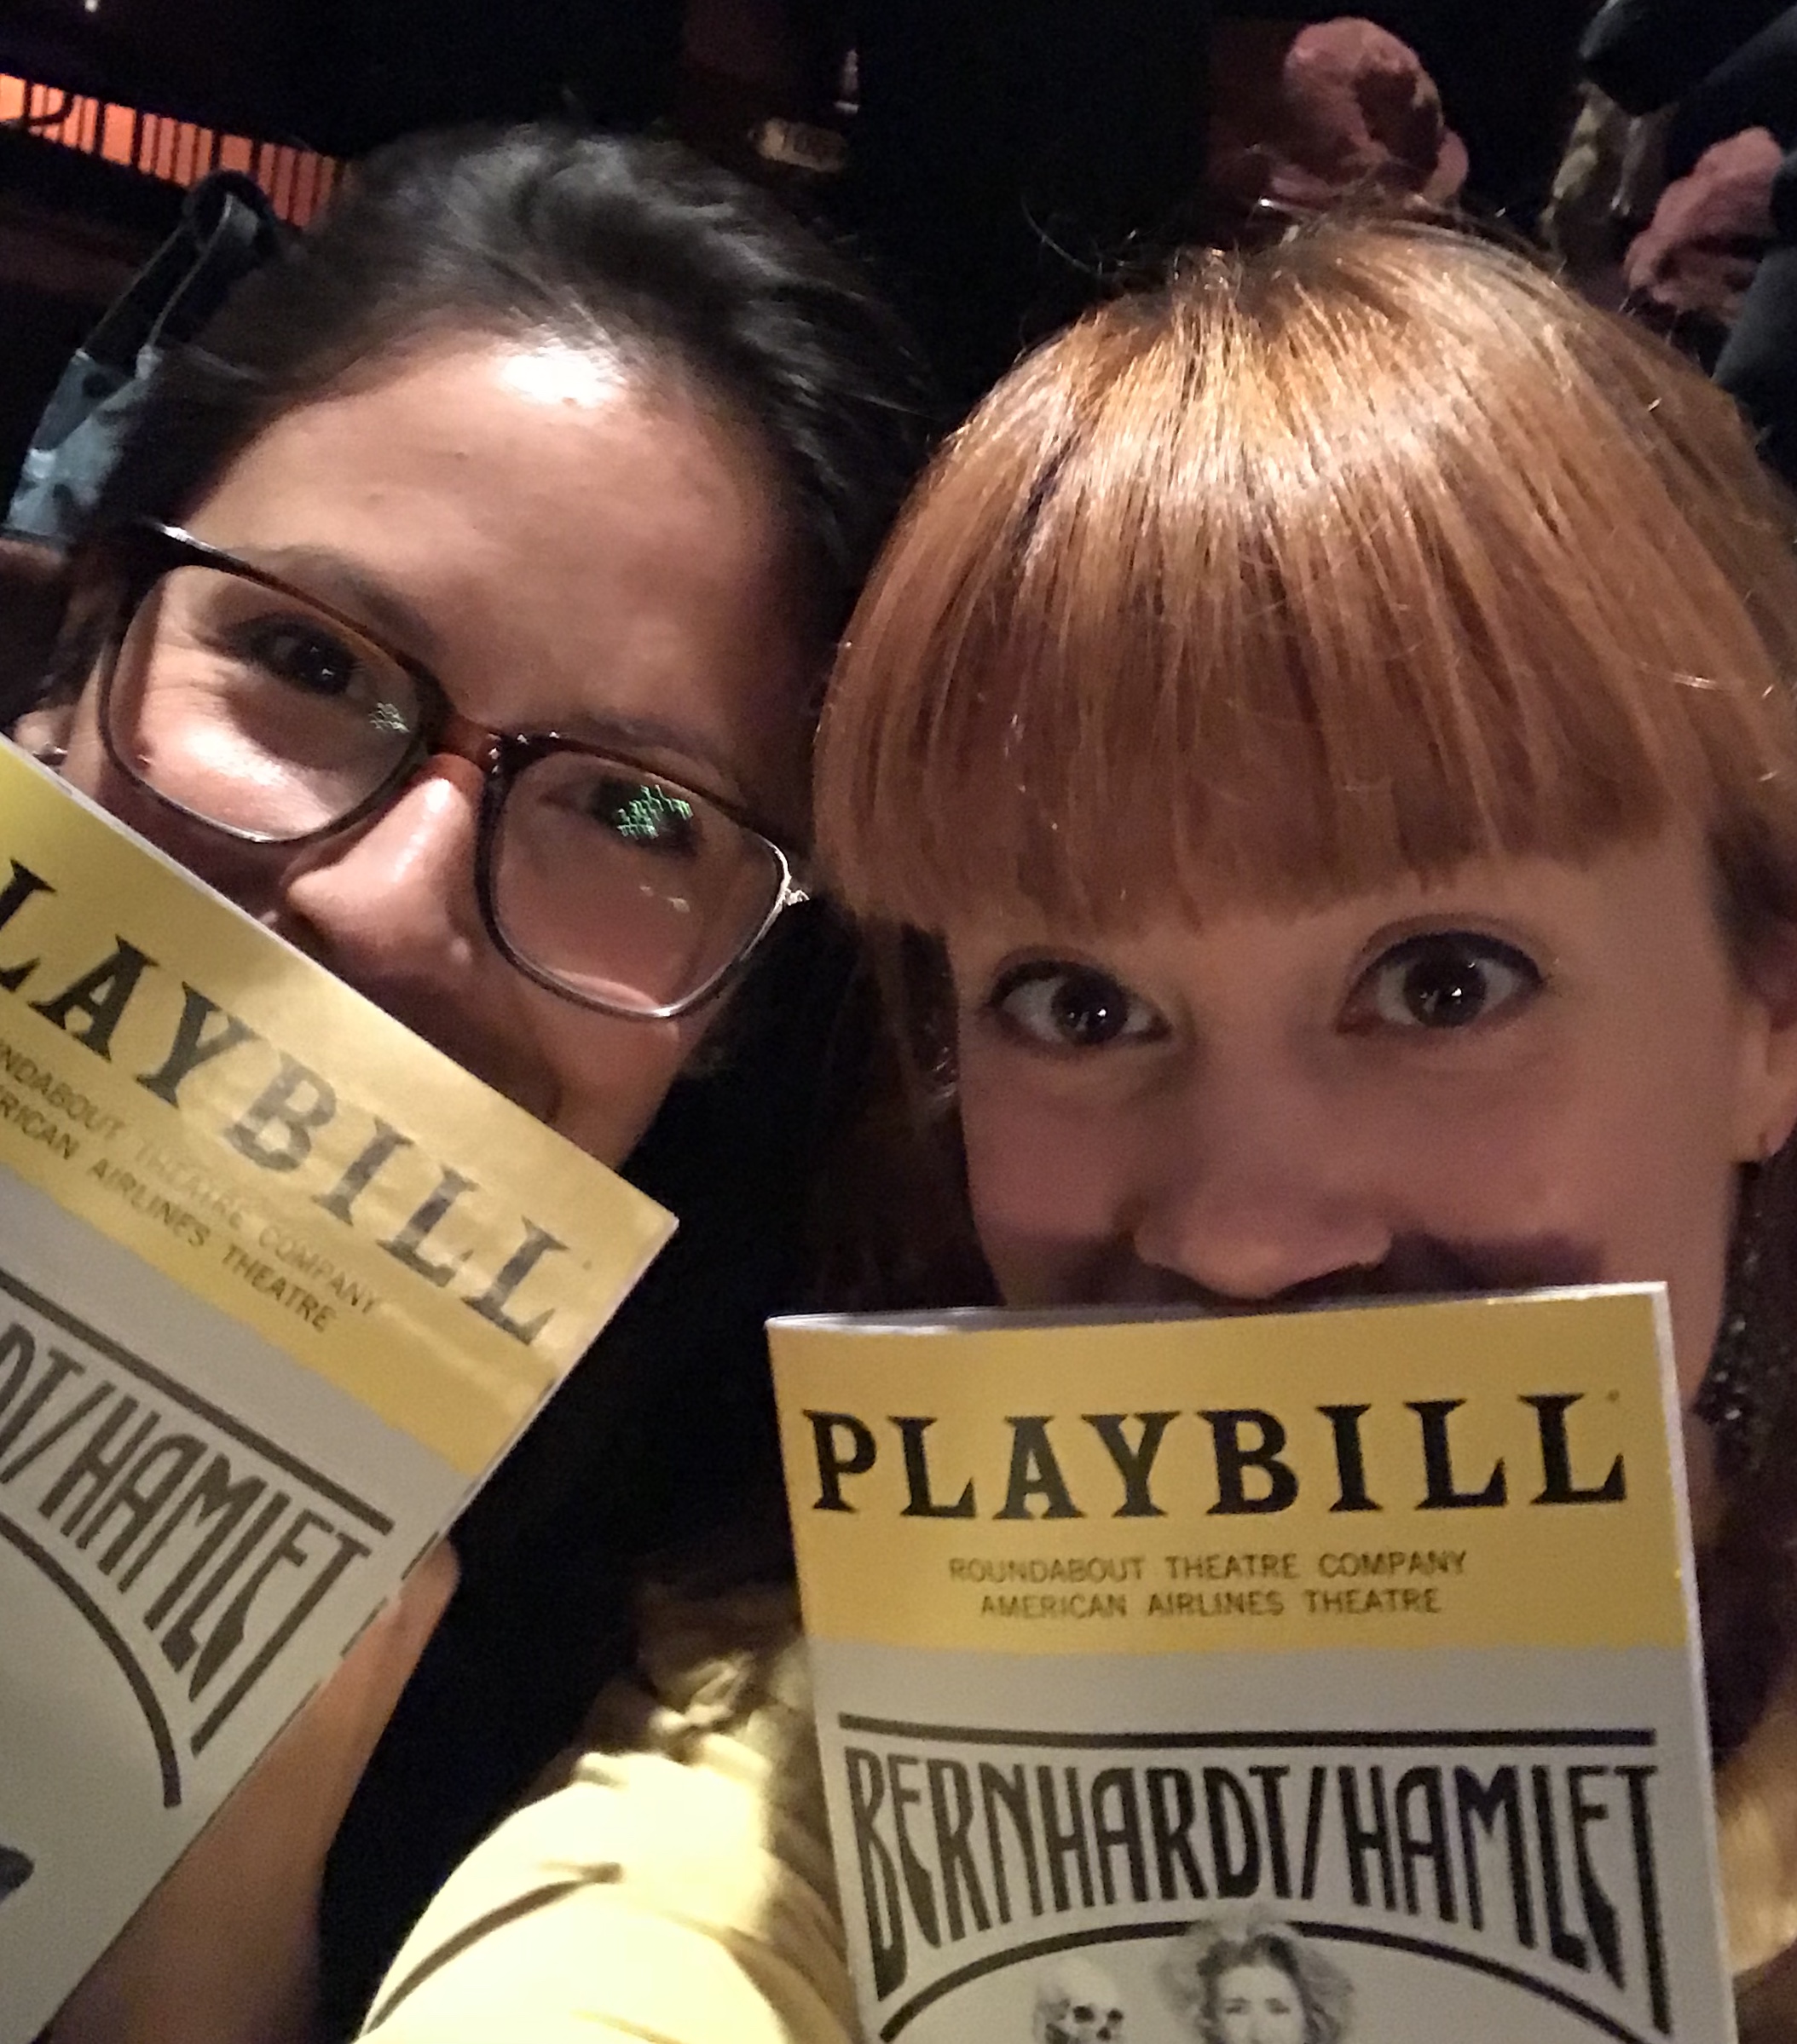 Blair with Erika Santillana at Bernhardt/Hamlet on Broadway